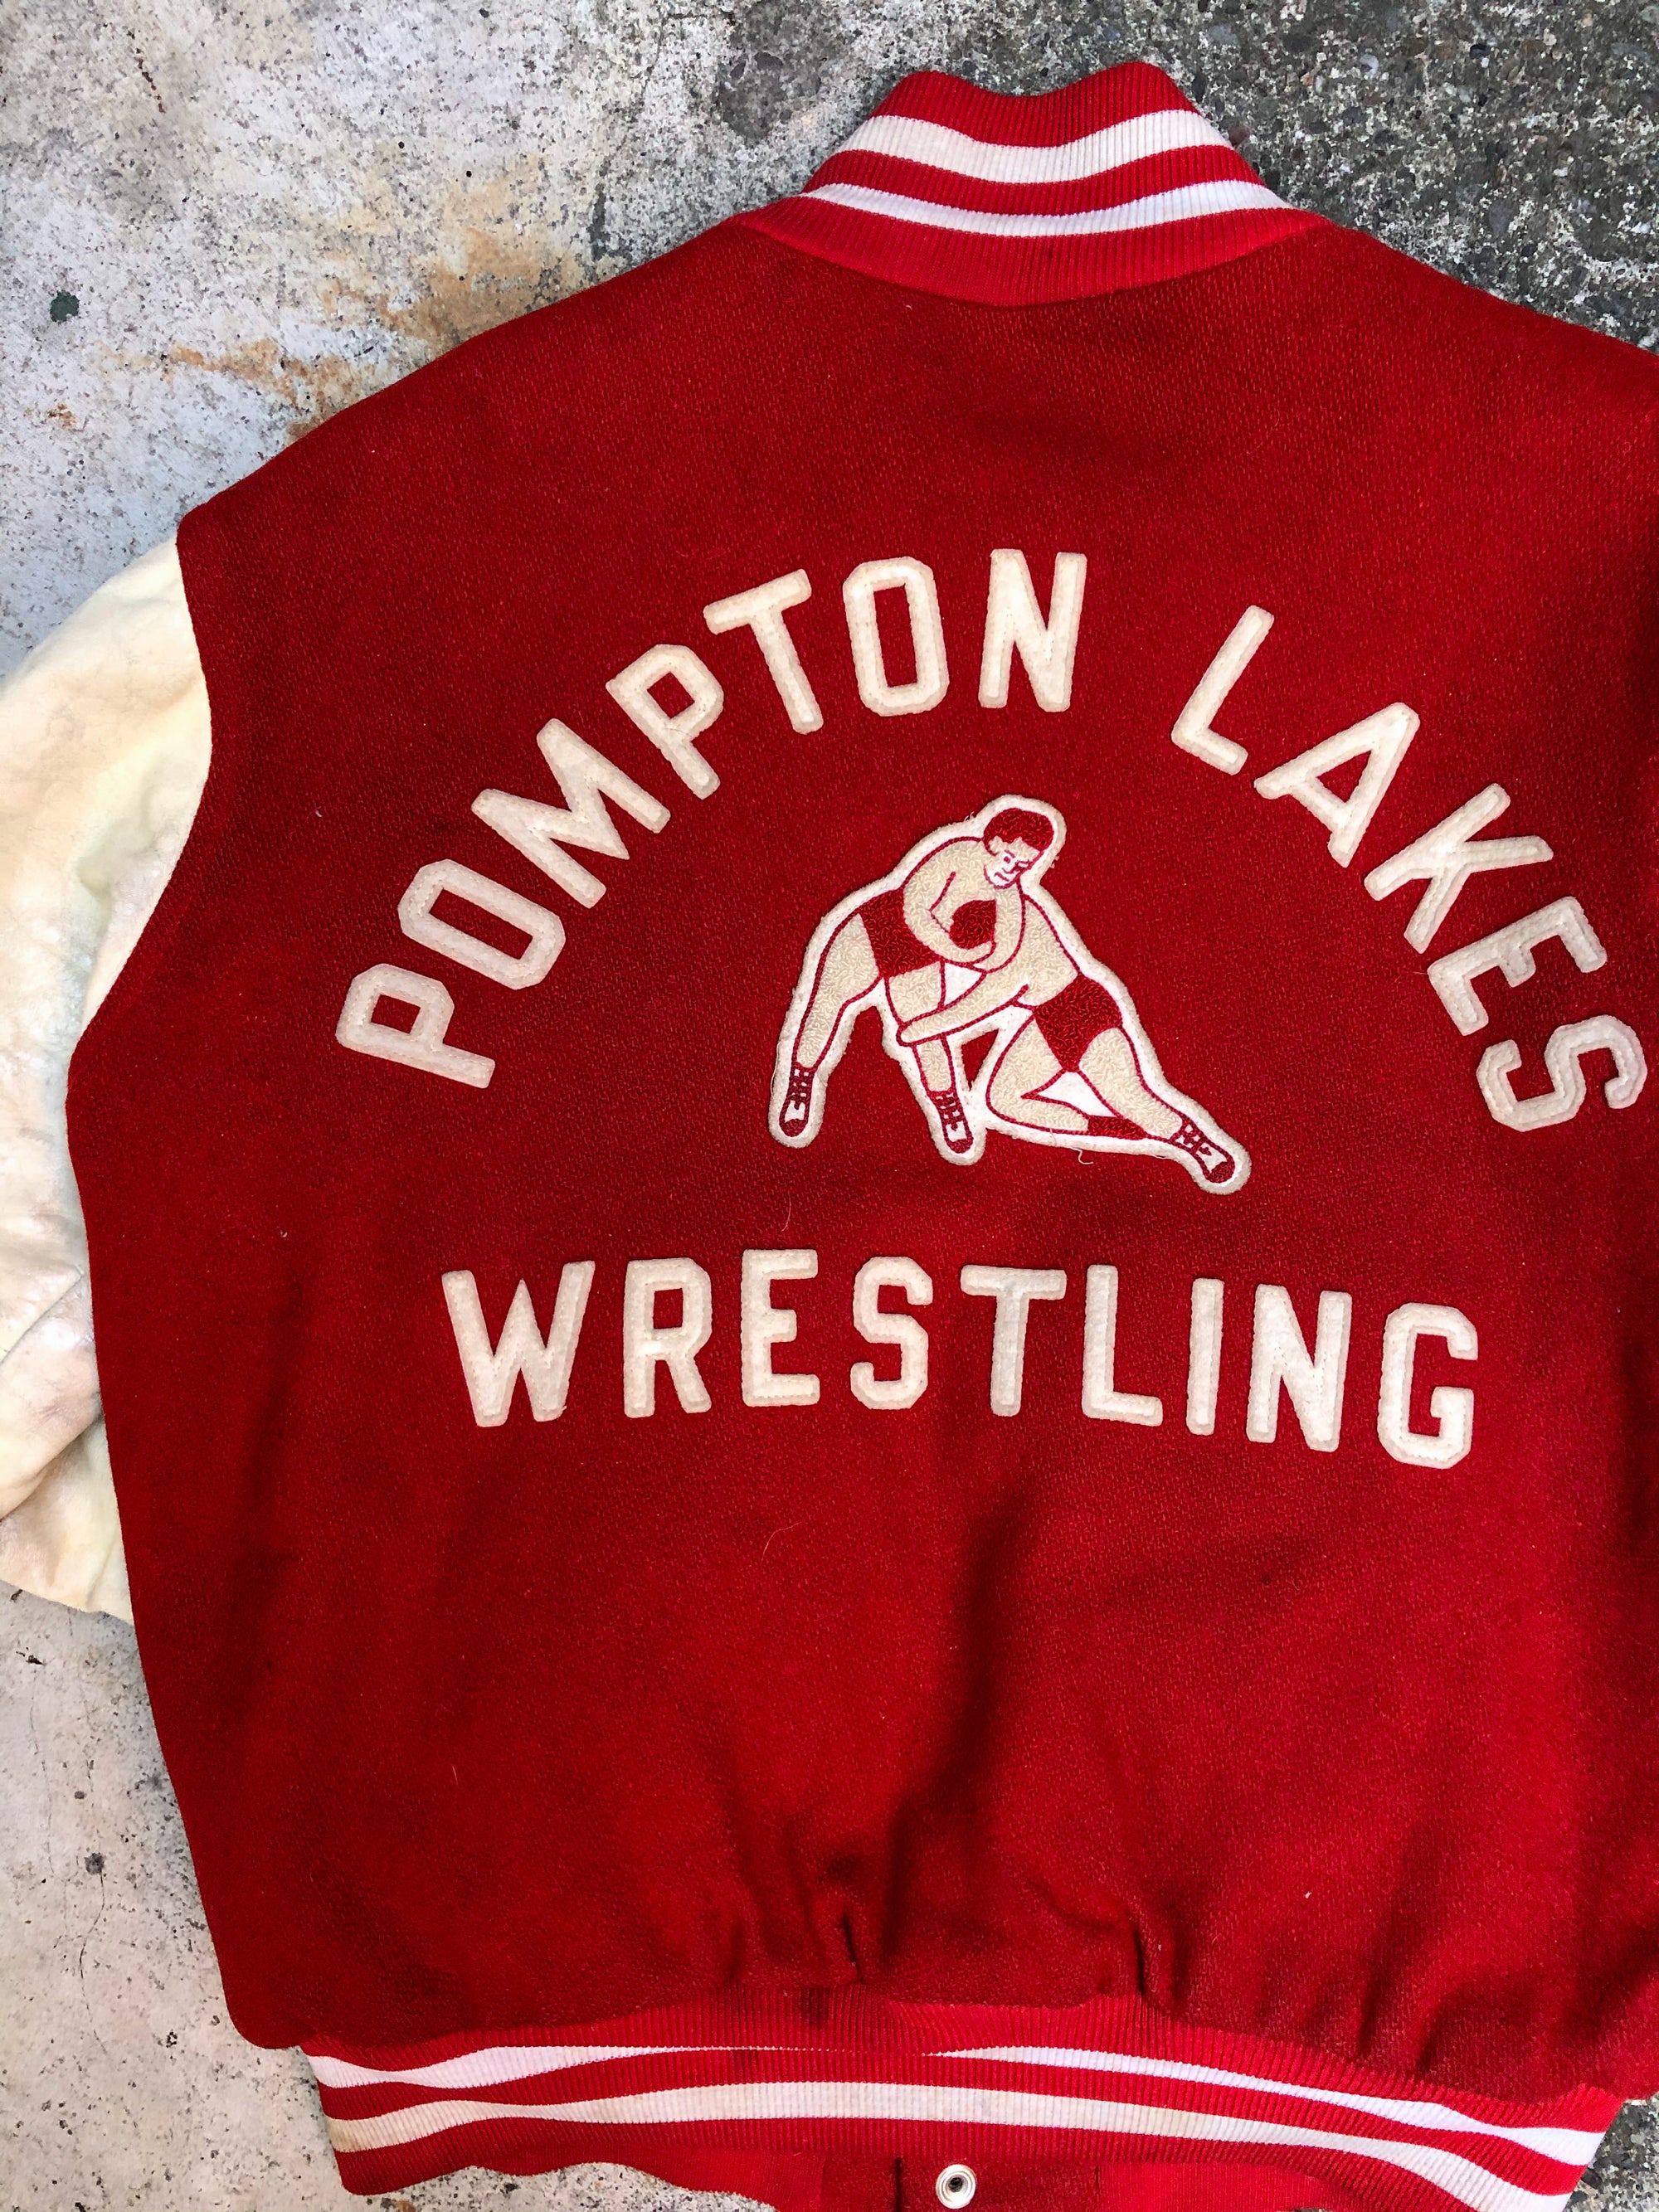 1980s Cherry Red Chain Stitch “Pompton Lakes Wrestling” Varsity Jacket (M)